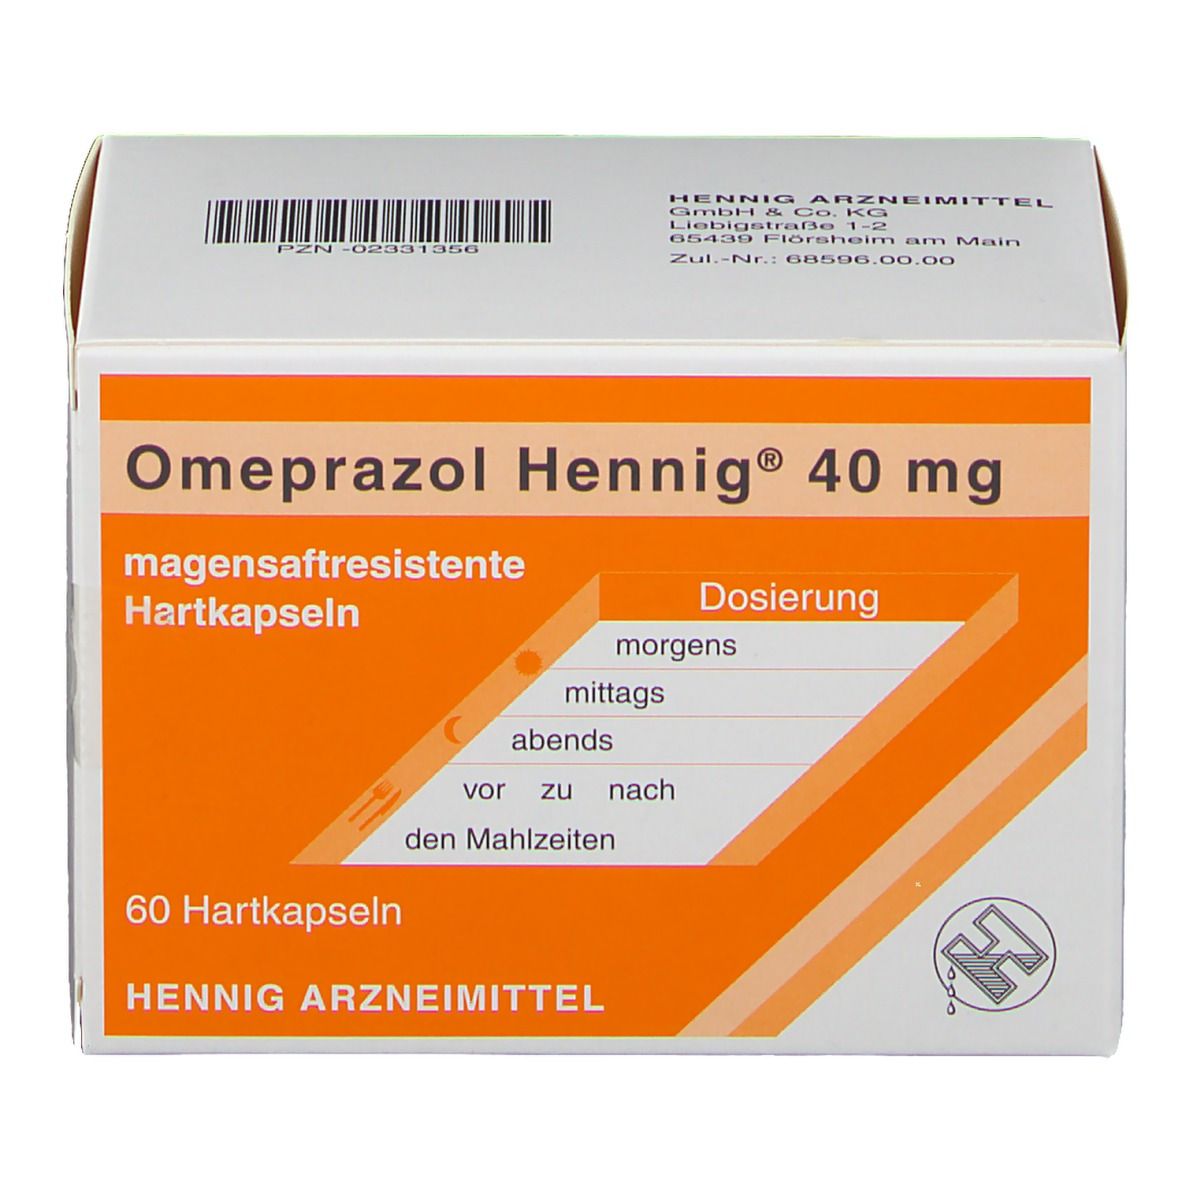 Omeprazol Hennig® 40 mg